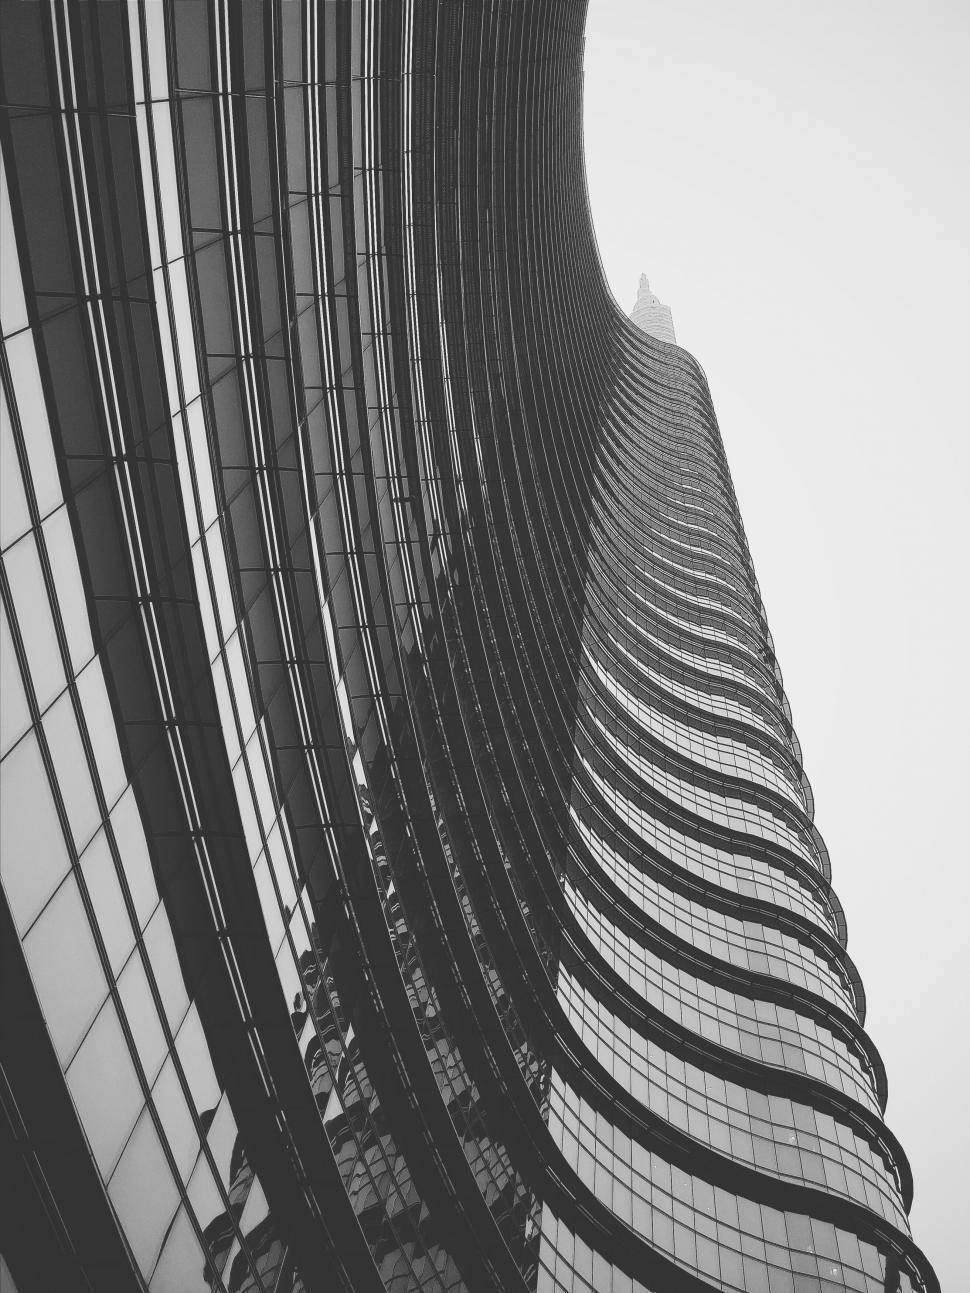 Free Image of Curved skyscraper facade in monochrome 